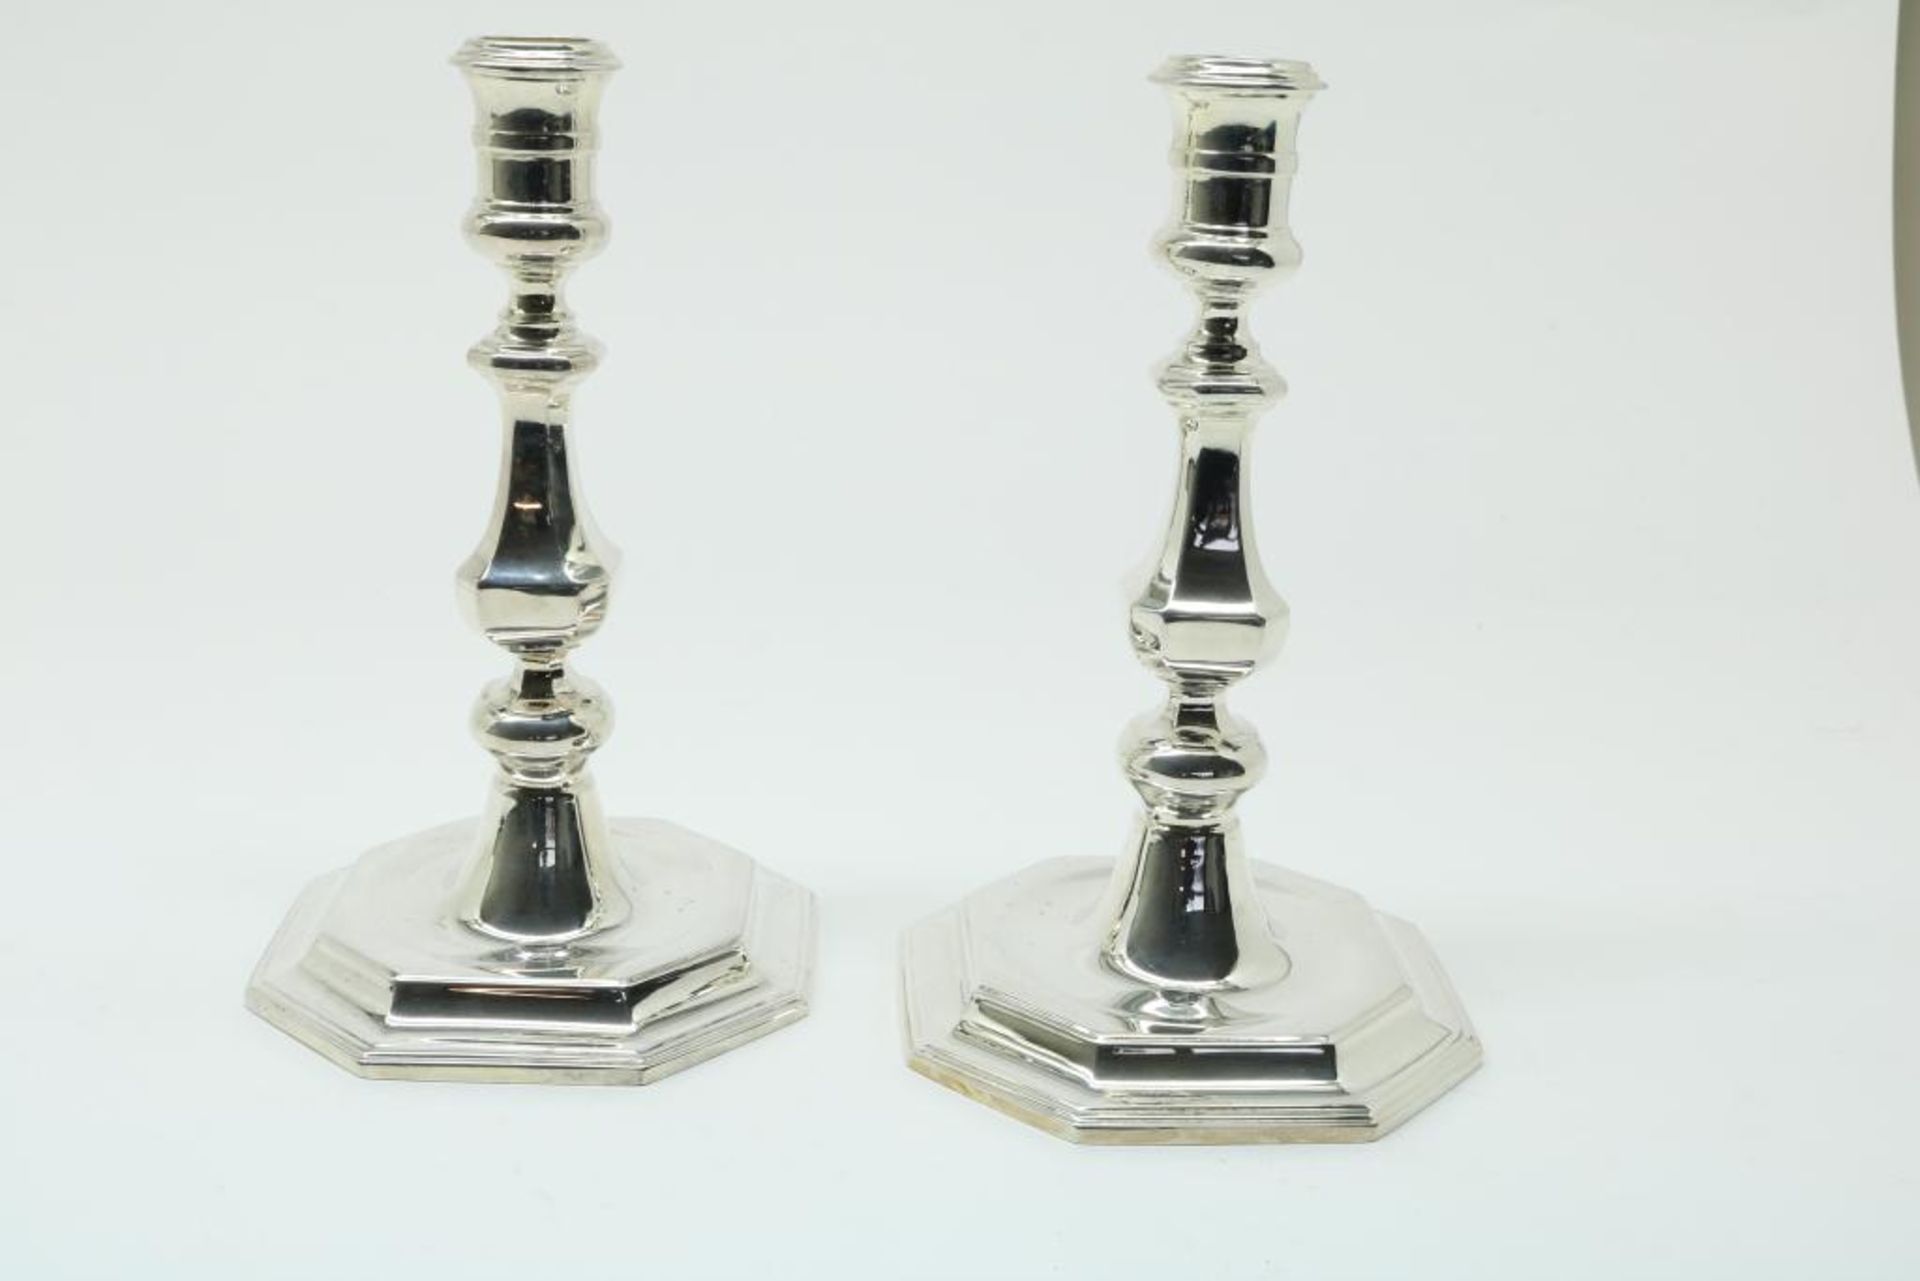 Paar zilveren kandelaars, regence stijl - Bild 3 aus 3